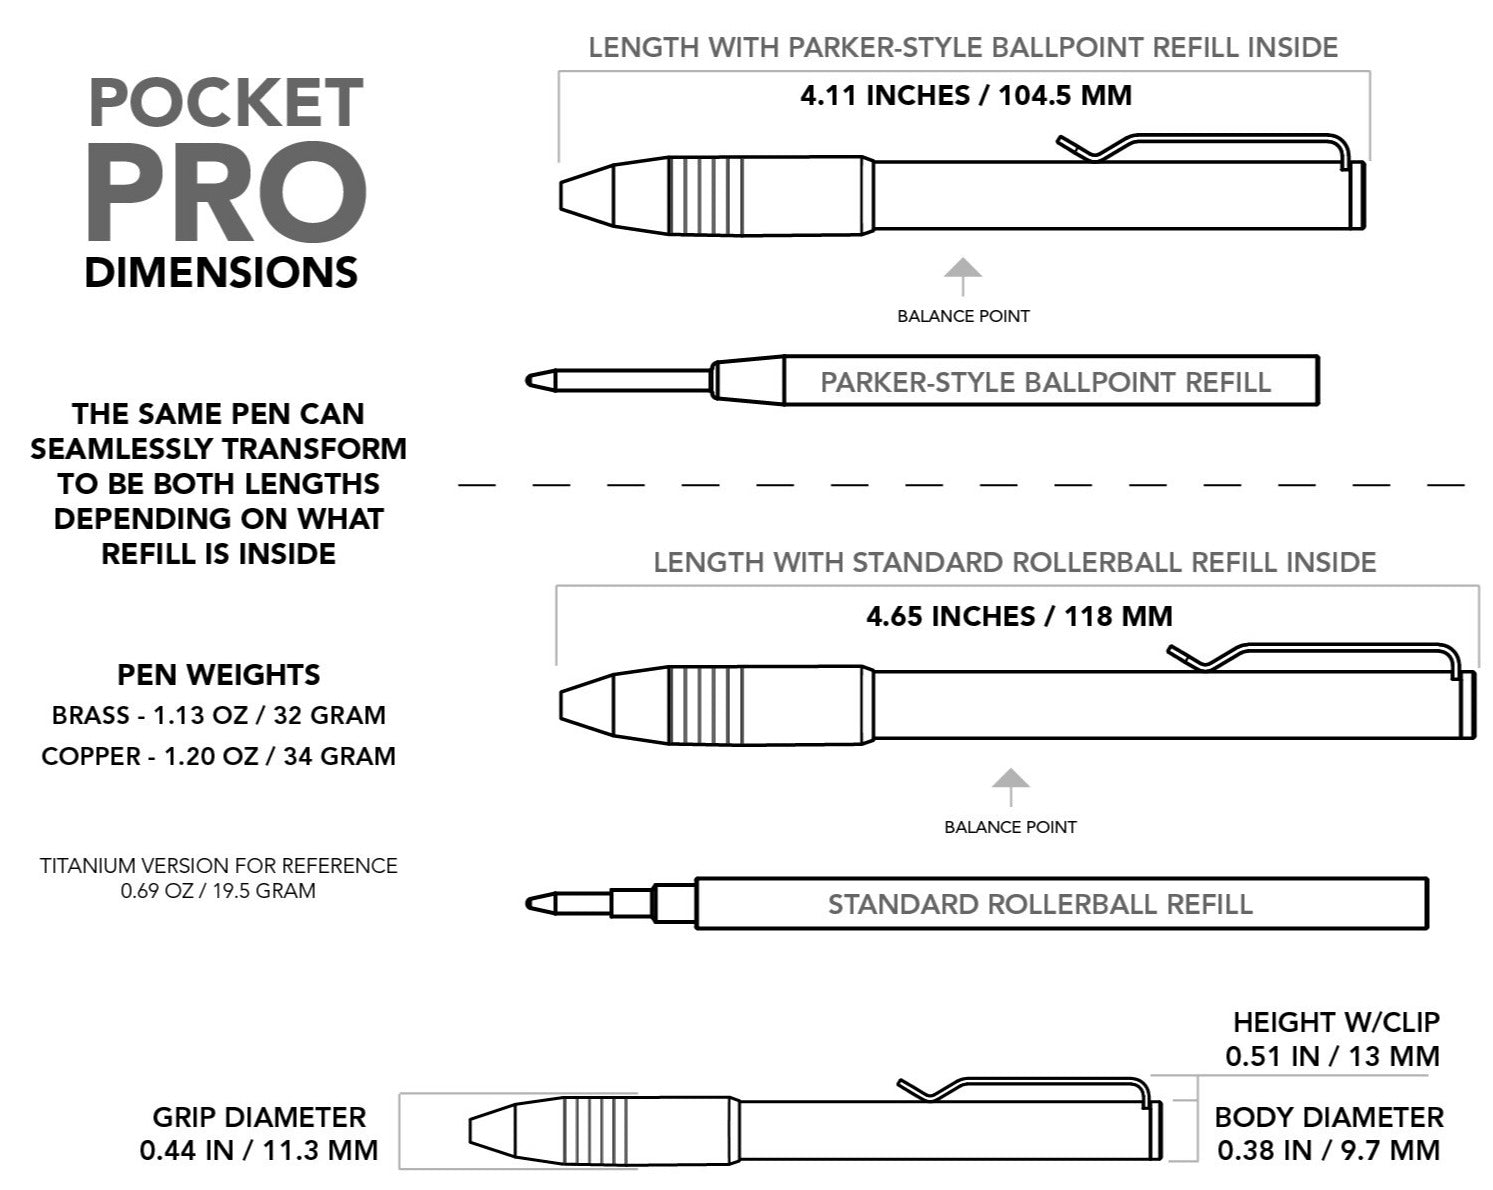 Big Idea Design – Stylo Pocket Pro en laiton et cuivre (le stylo EDC à réglage automatique)